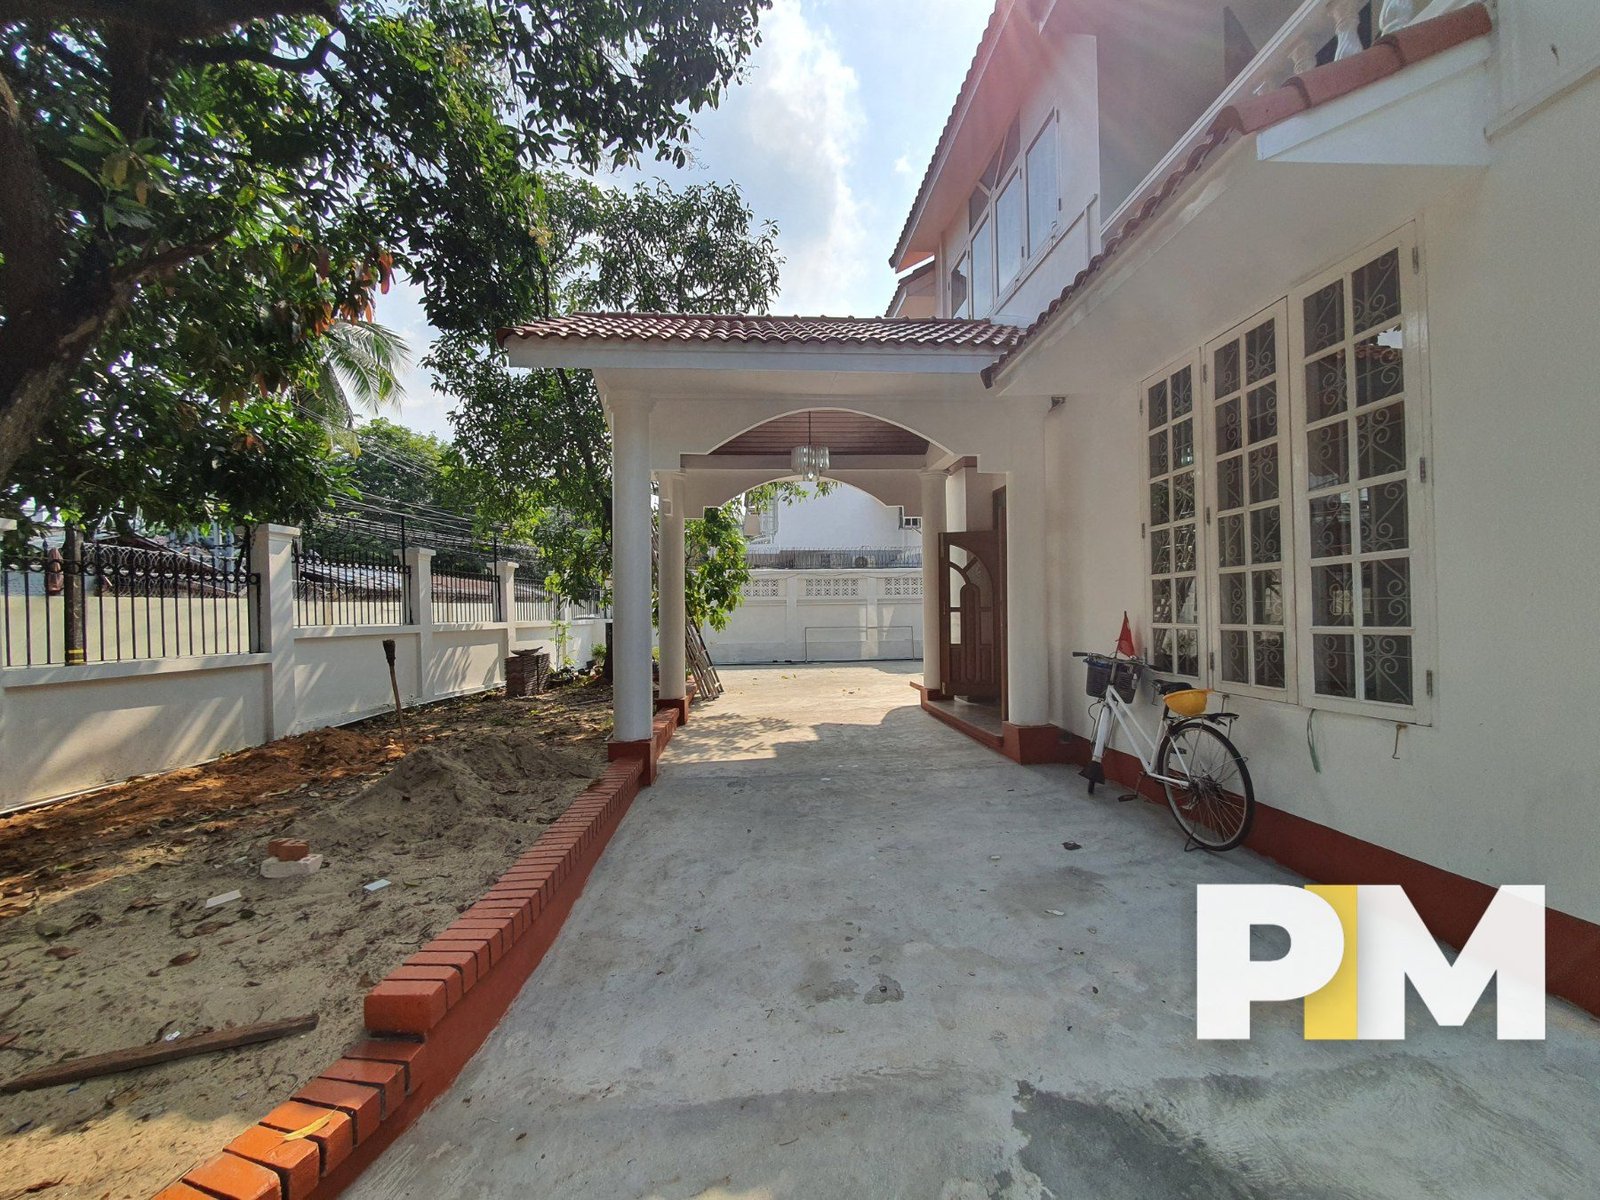 Entrance view - Yangon Real Estate